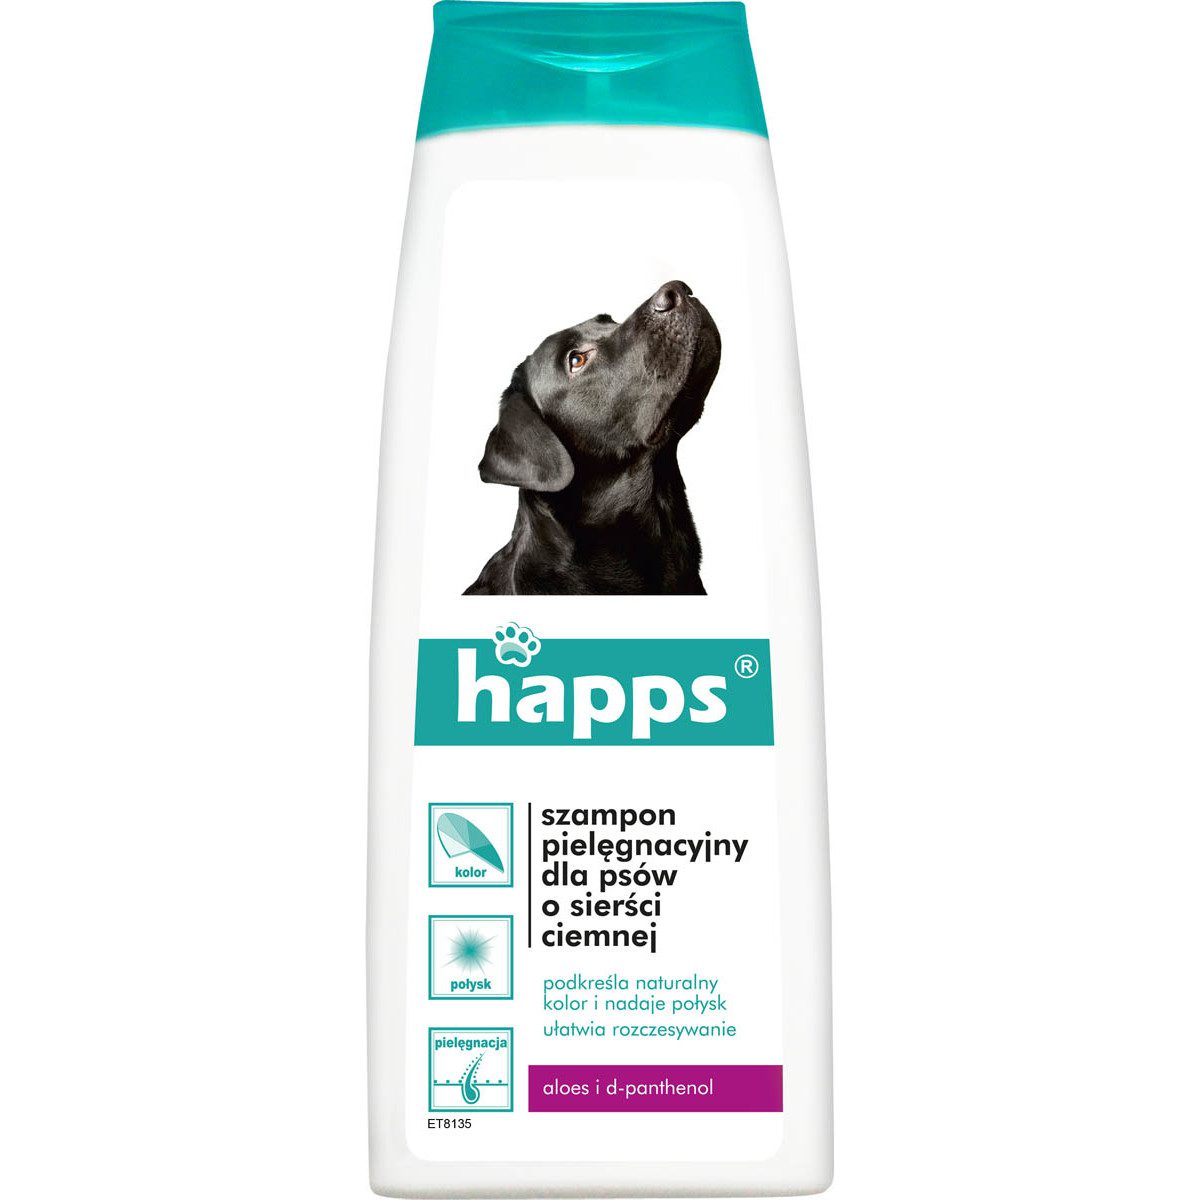 Happs Szampon pielęgnacyjny dla psów o sierści ciemnej 200ml